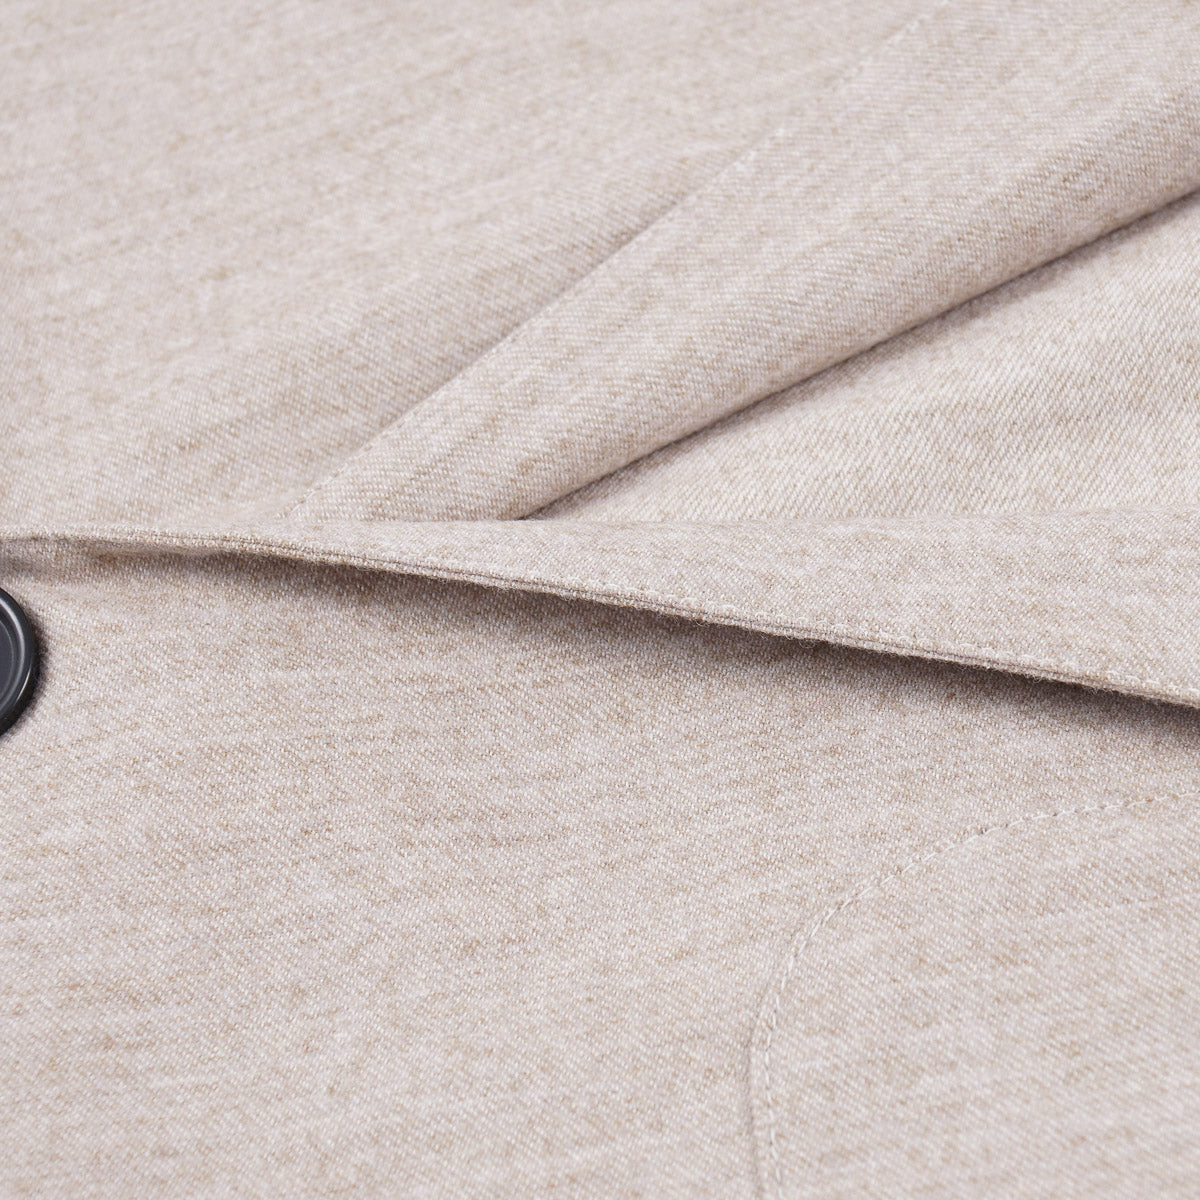 Finamore Unlined Lightweight Flannel Sport Coat - Top Shelf Apparel